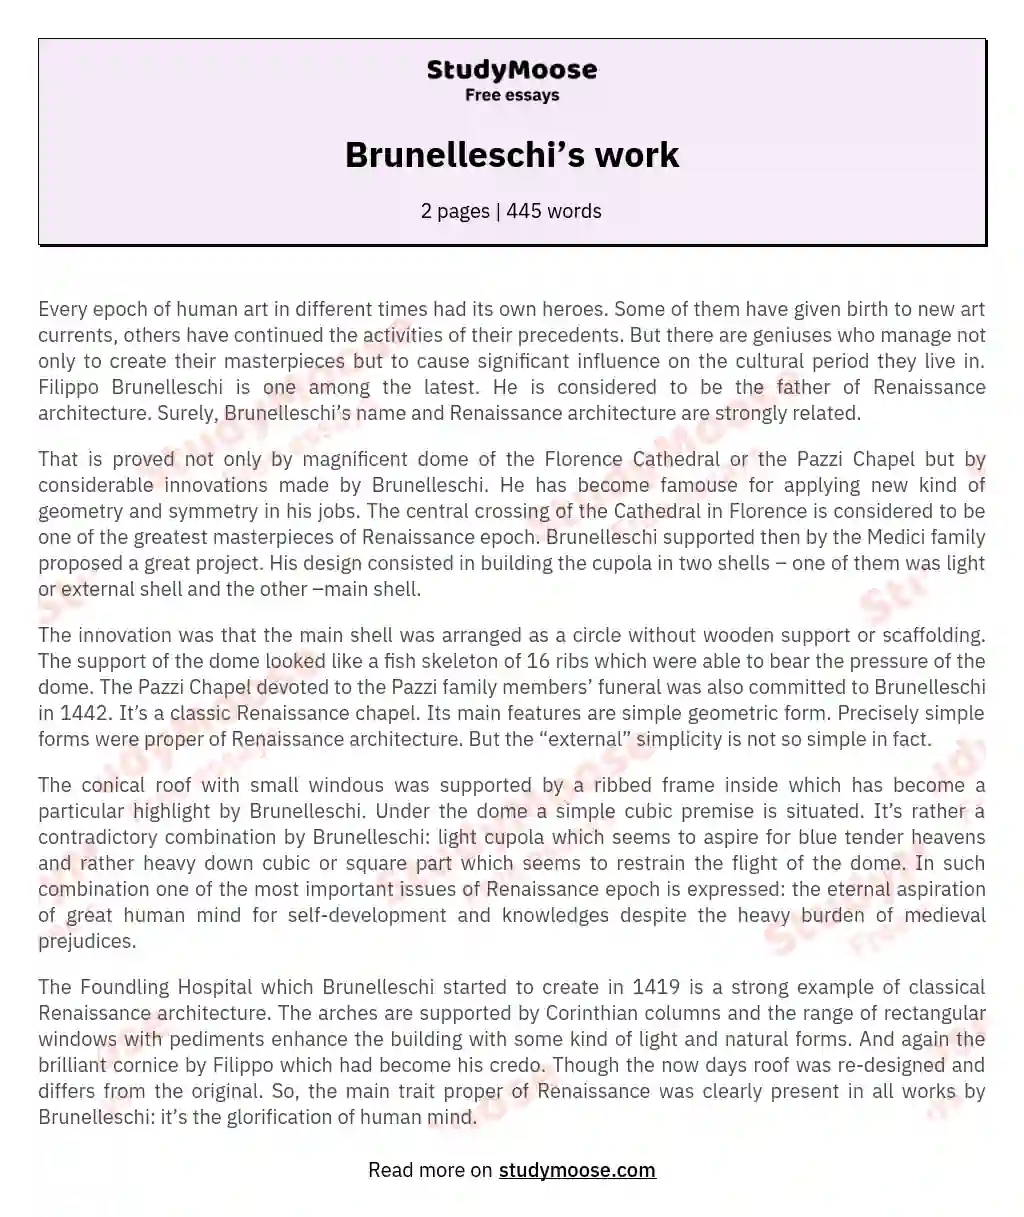 Brunelleschi’s work essay